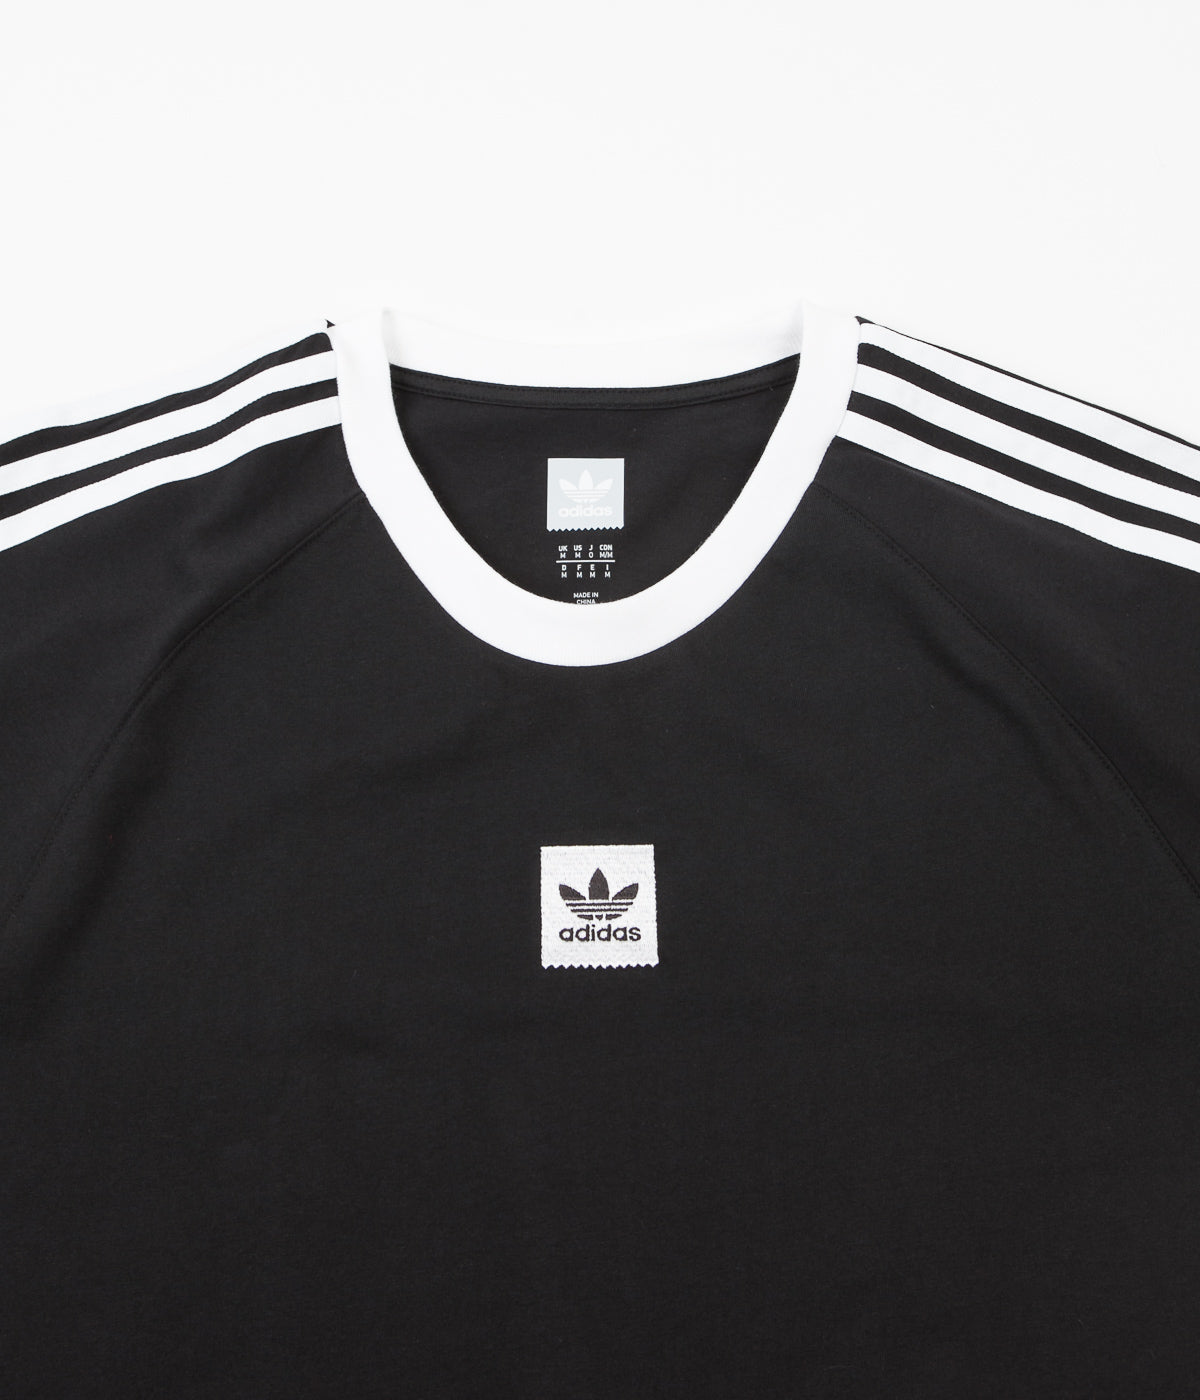 Adidas Cali 2 0 T Shirt Black White Flatspot